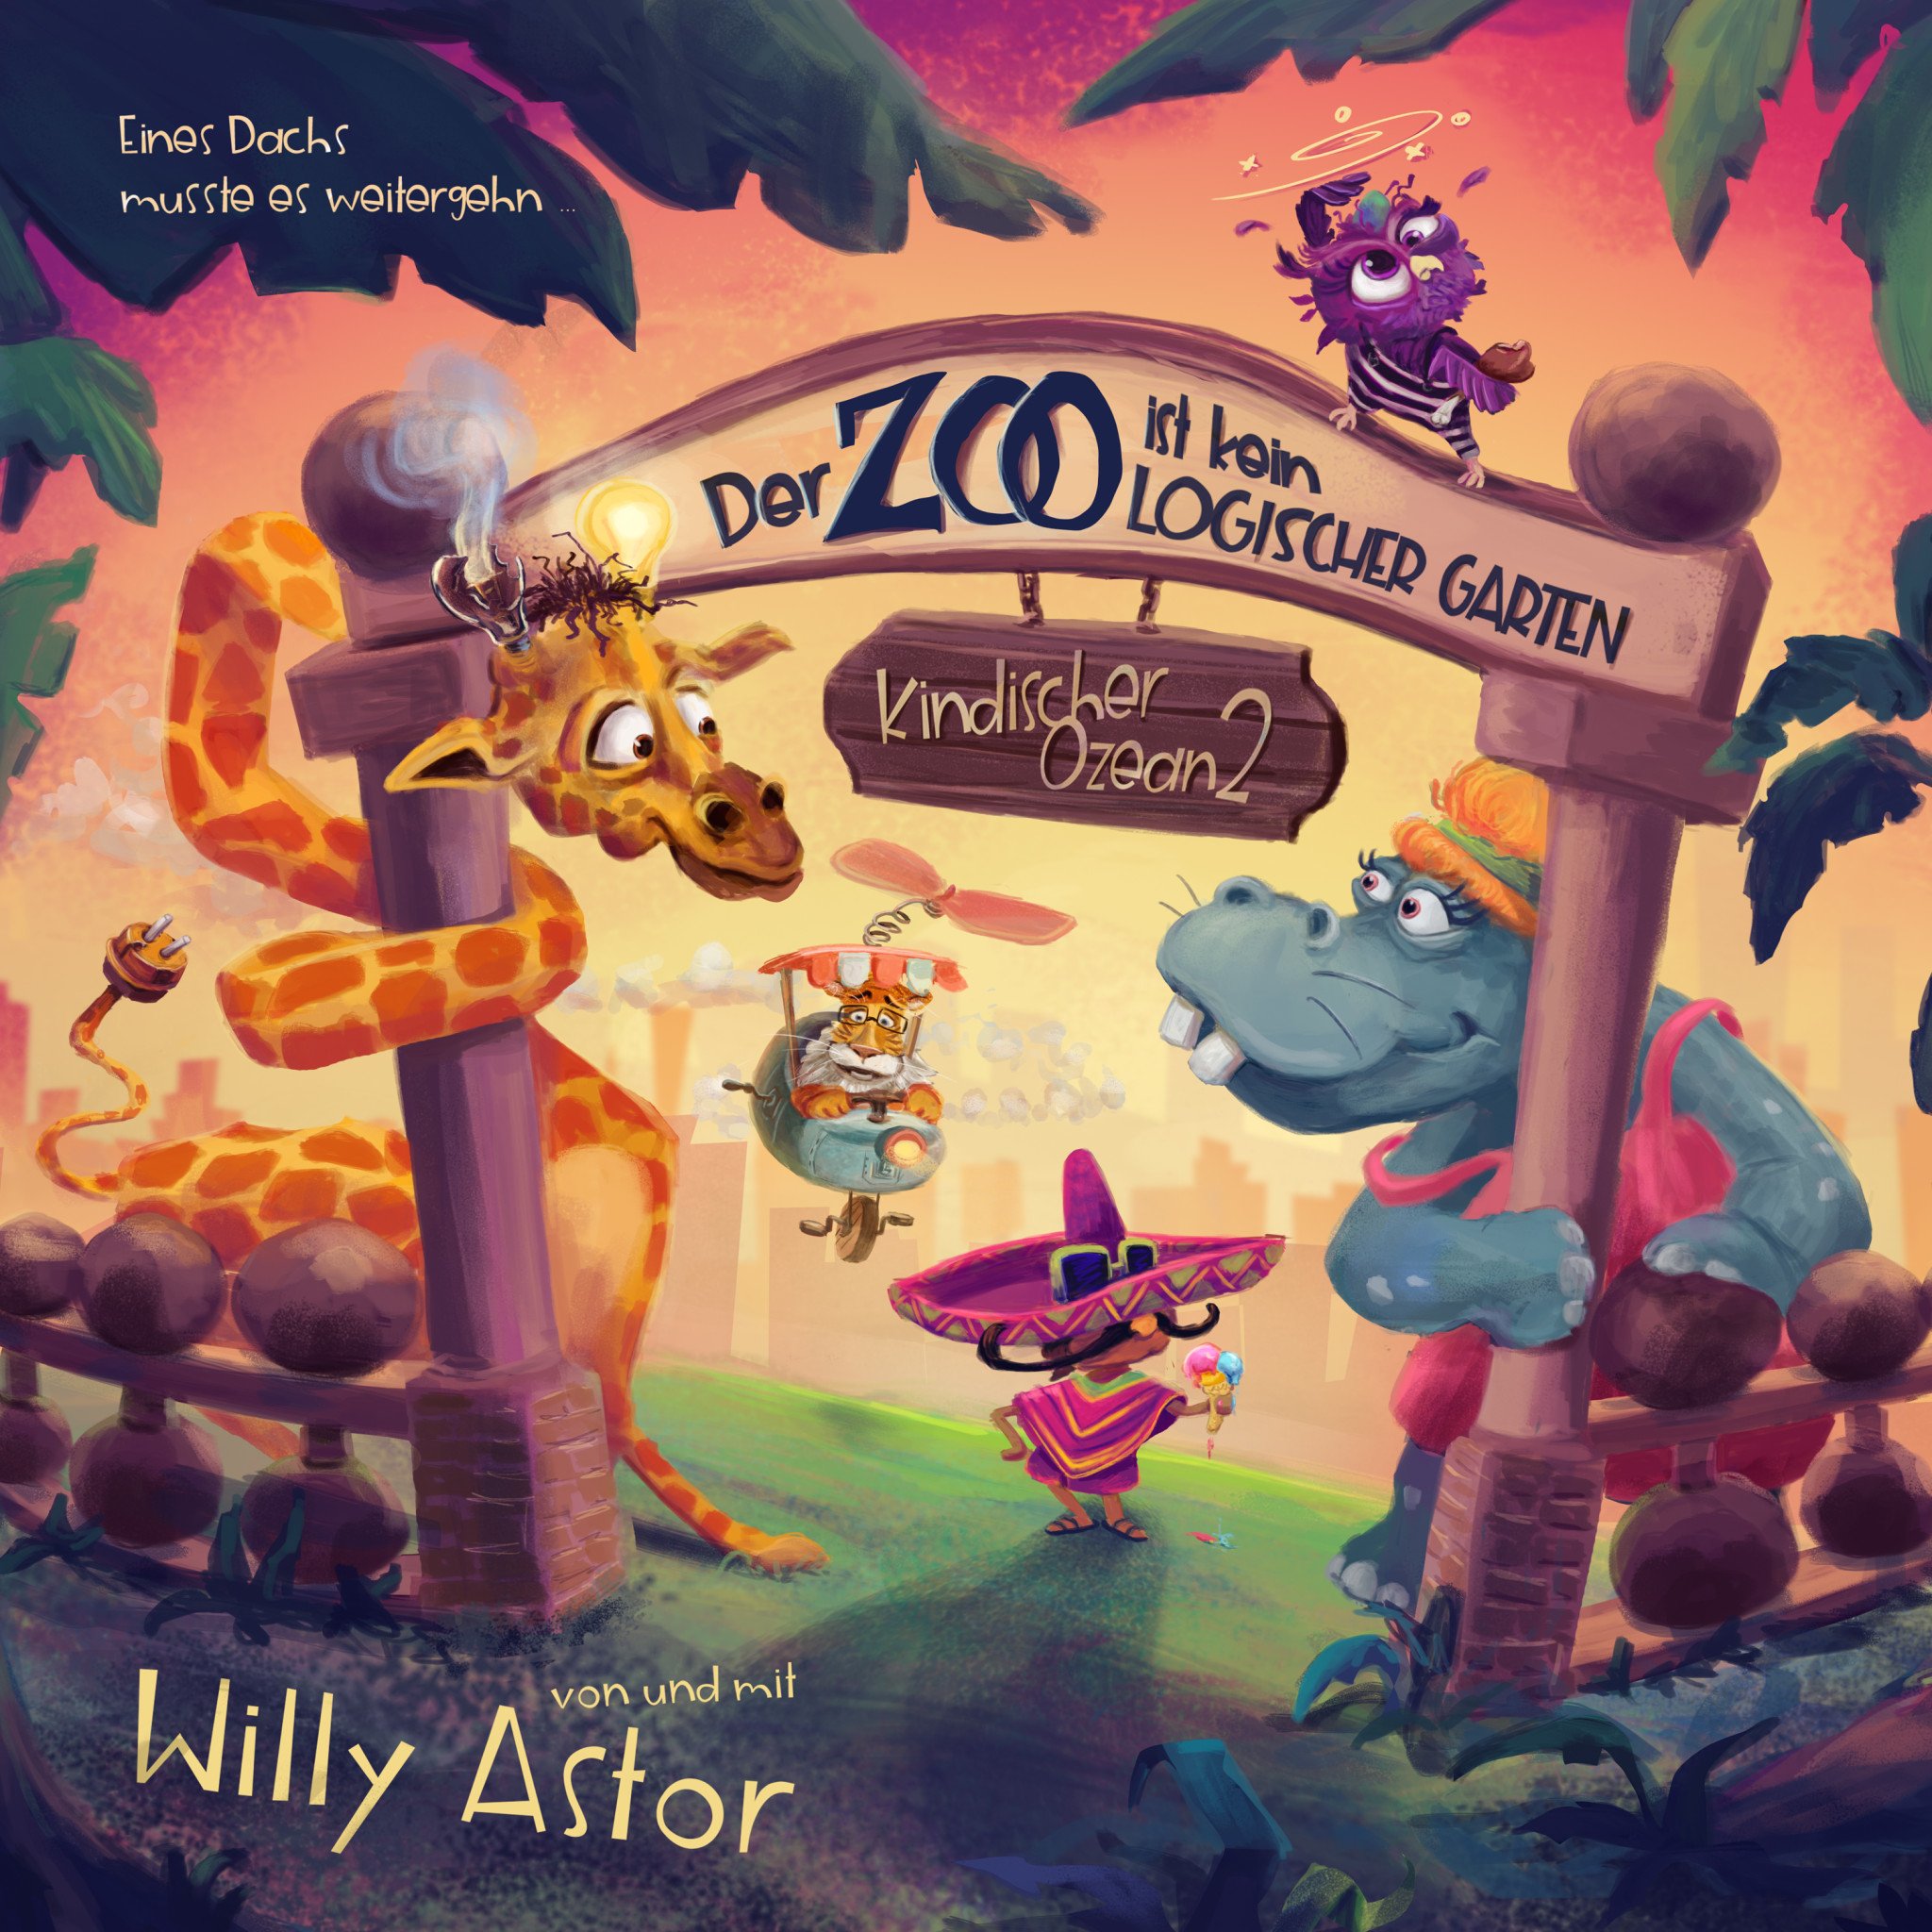 Willy Astor - Der Zoo ist kein logischer Garten - Cover 3k